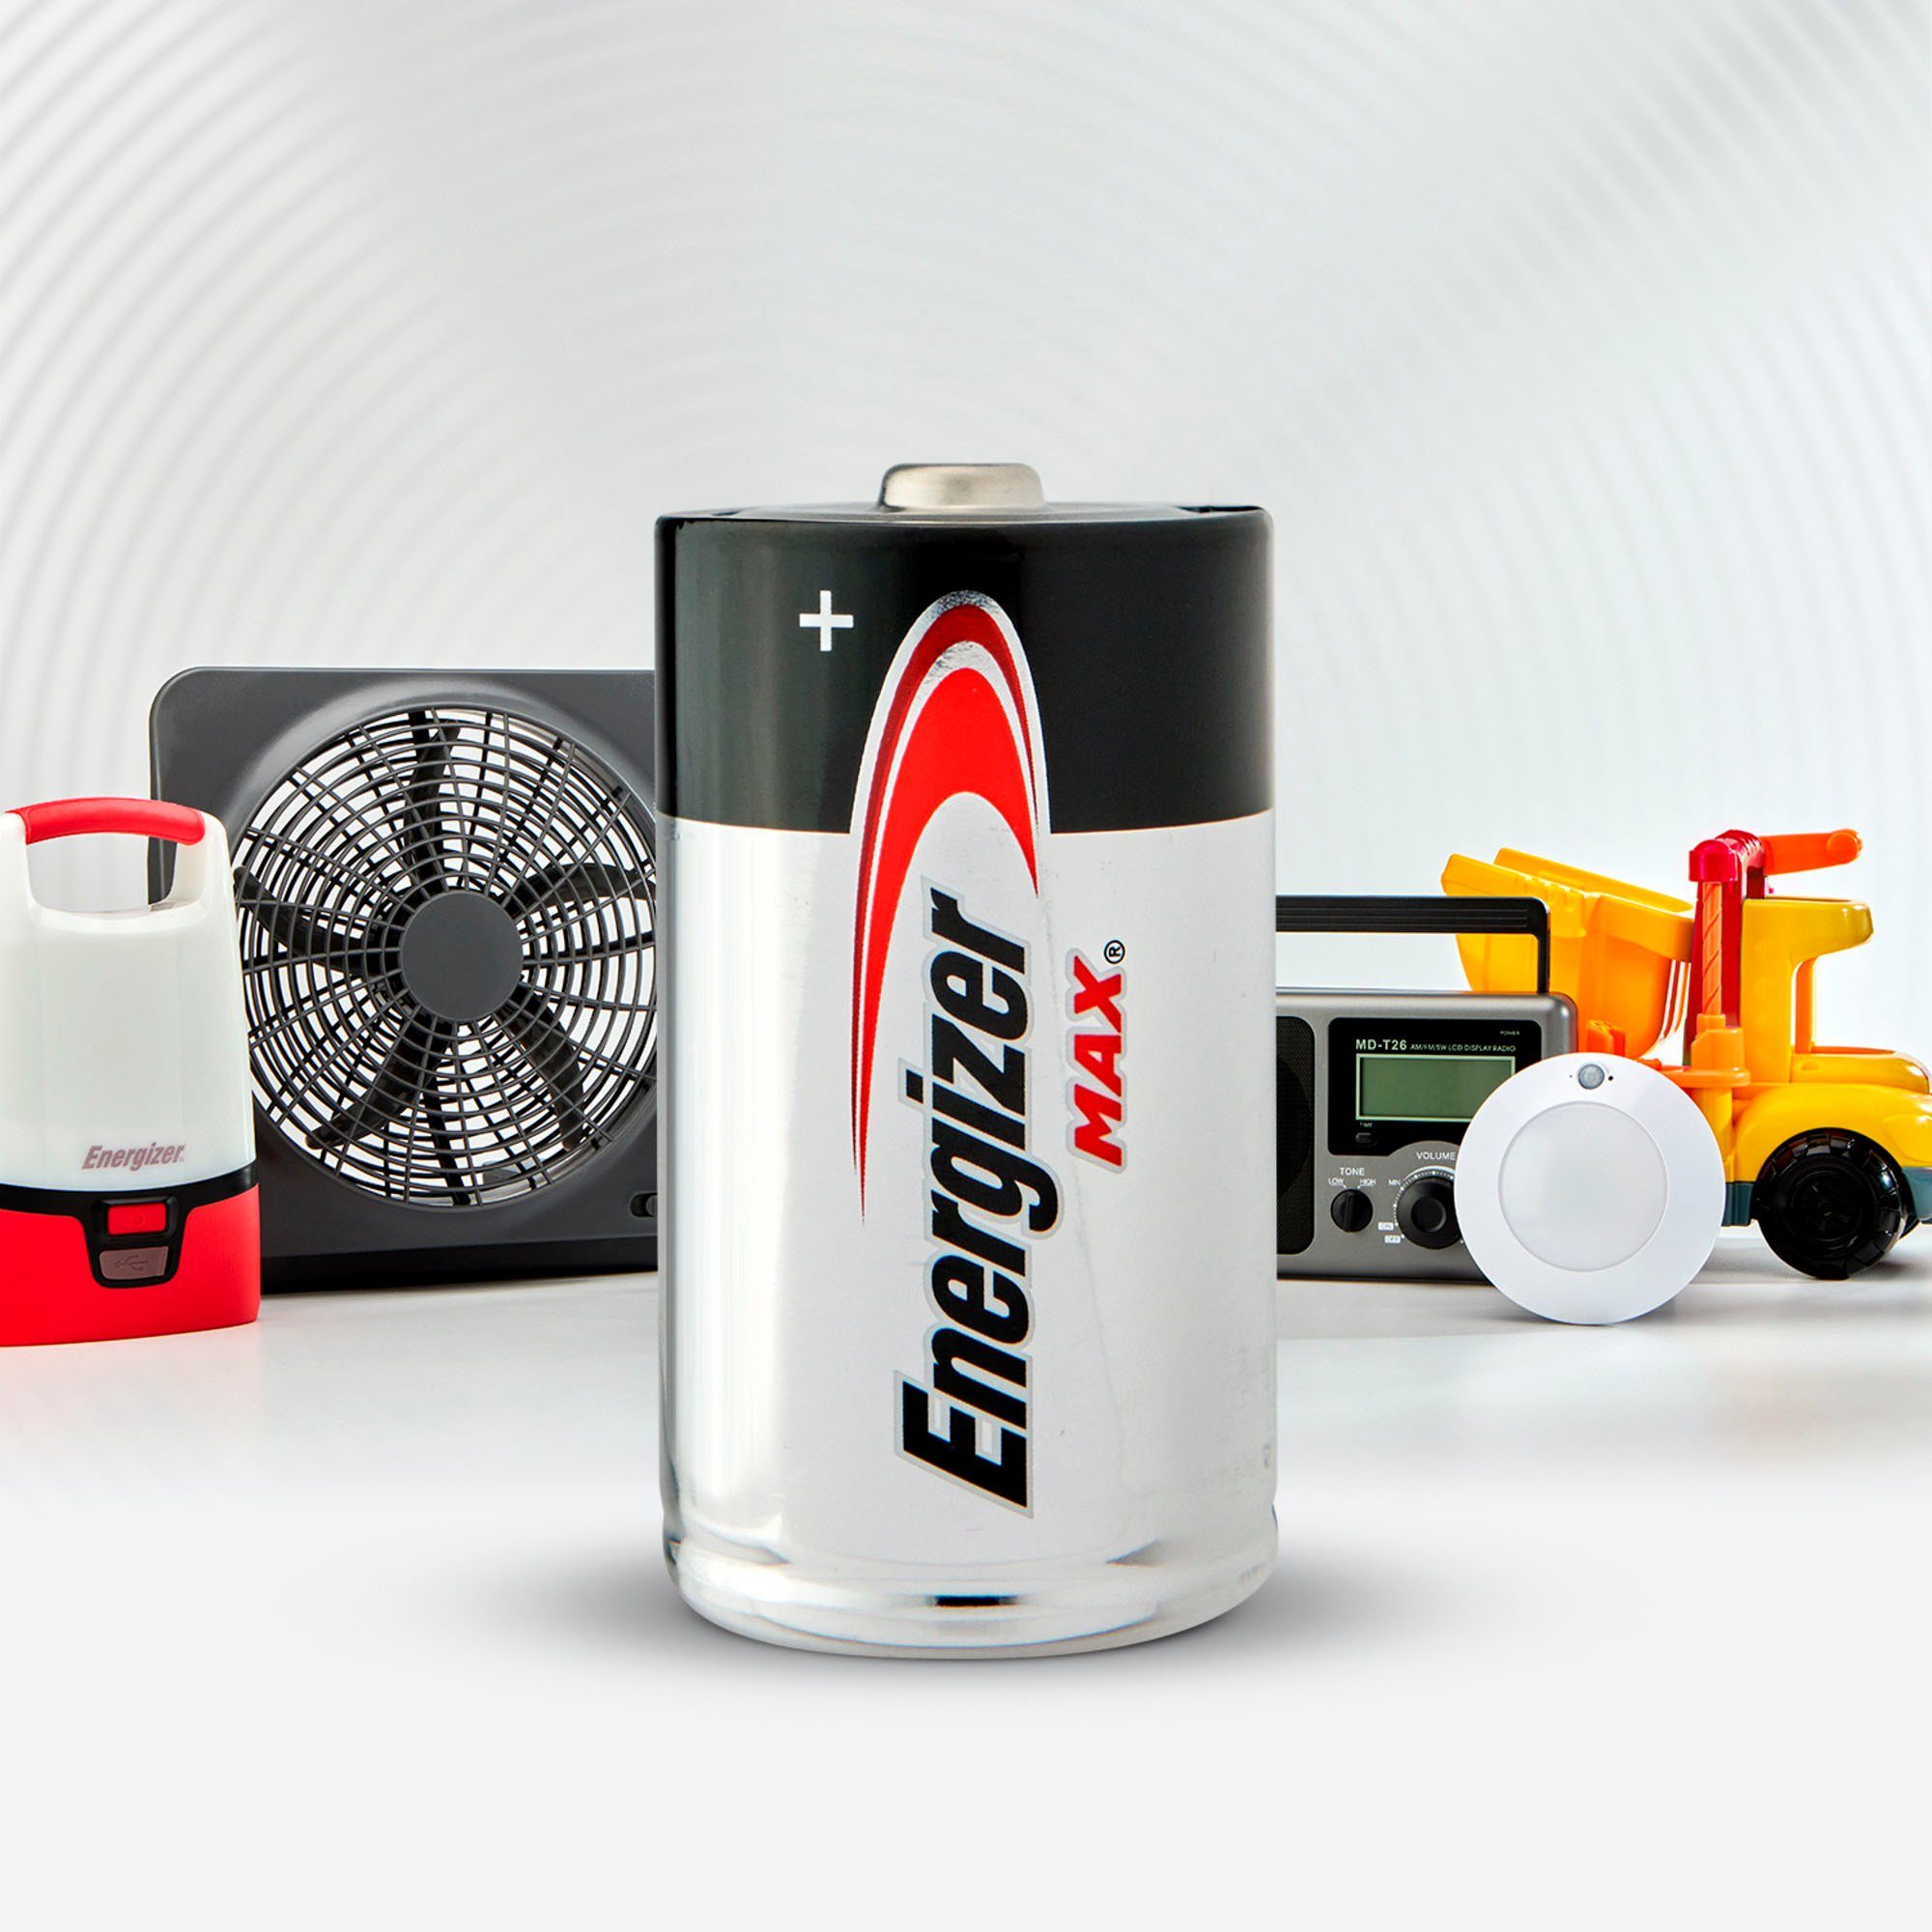 Batterie, (4 MAX D Energizer St) Alkaline Pack 4er